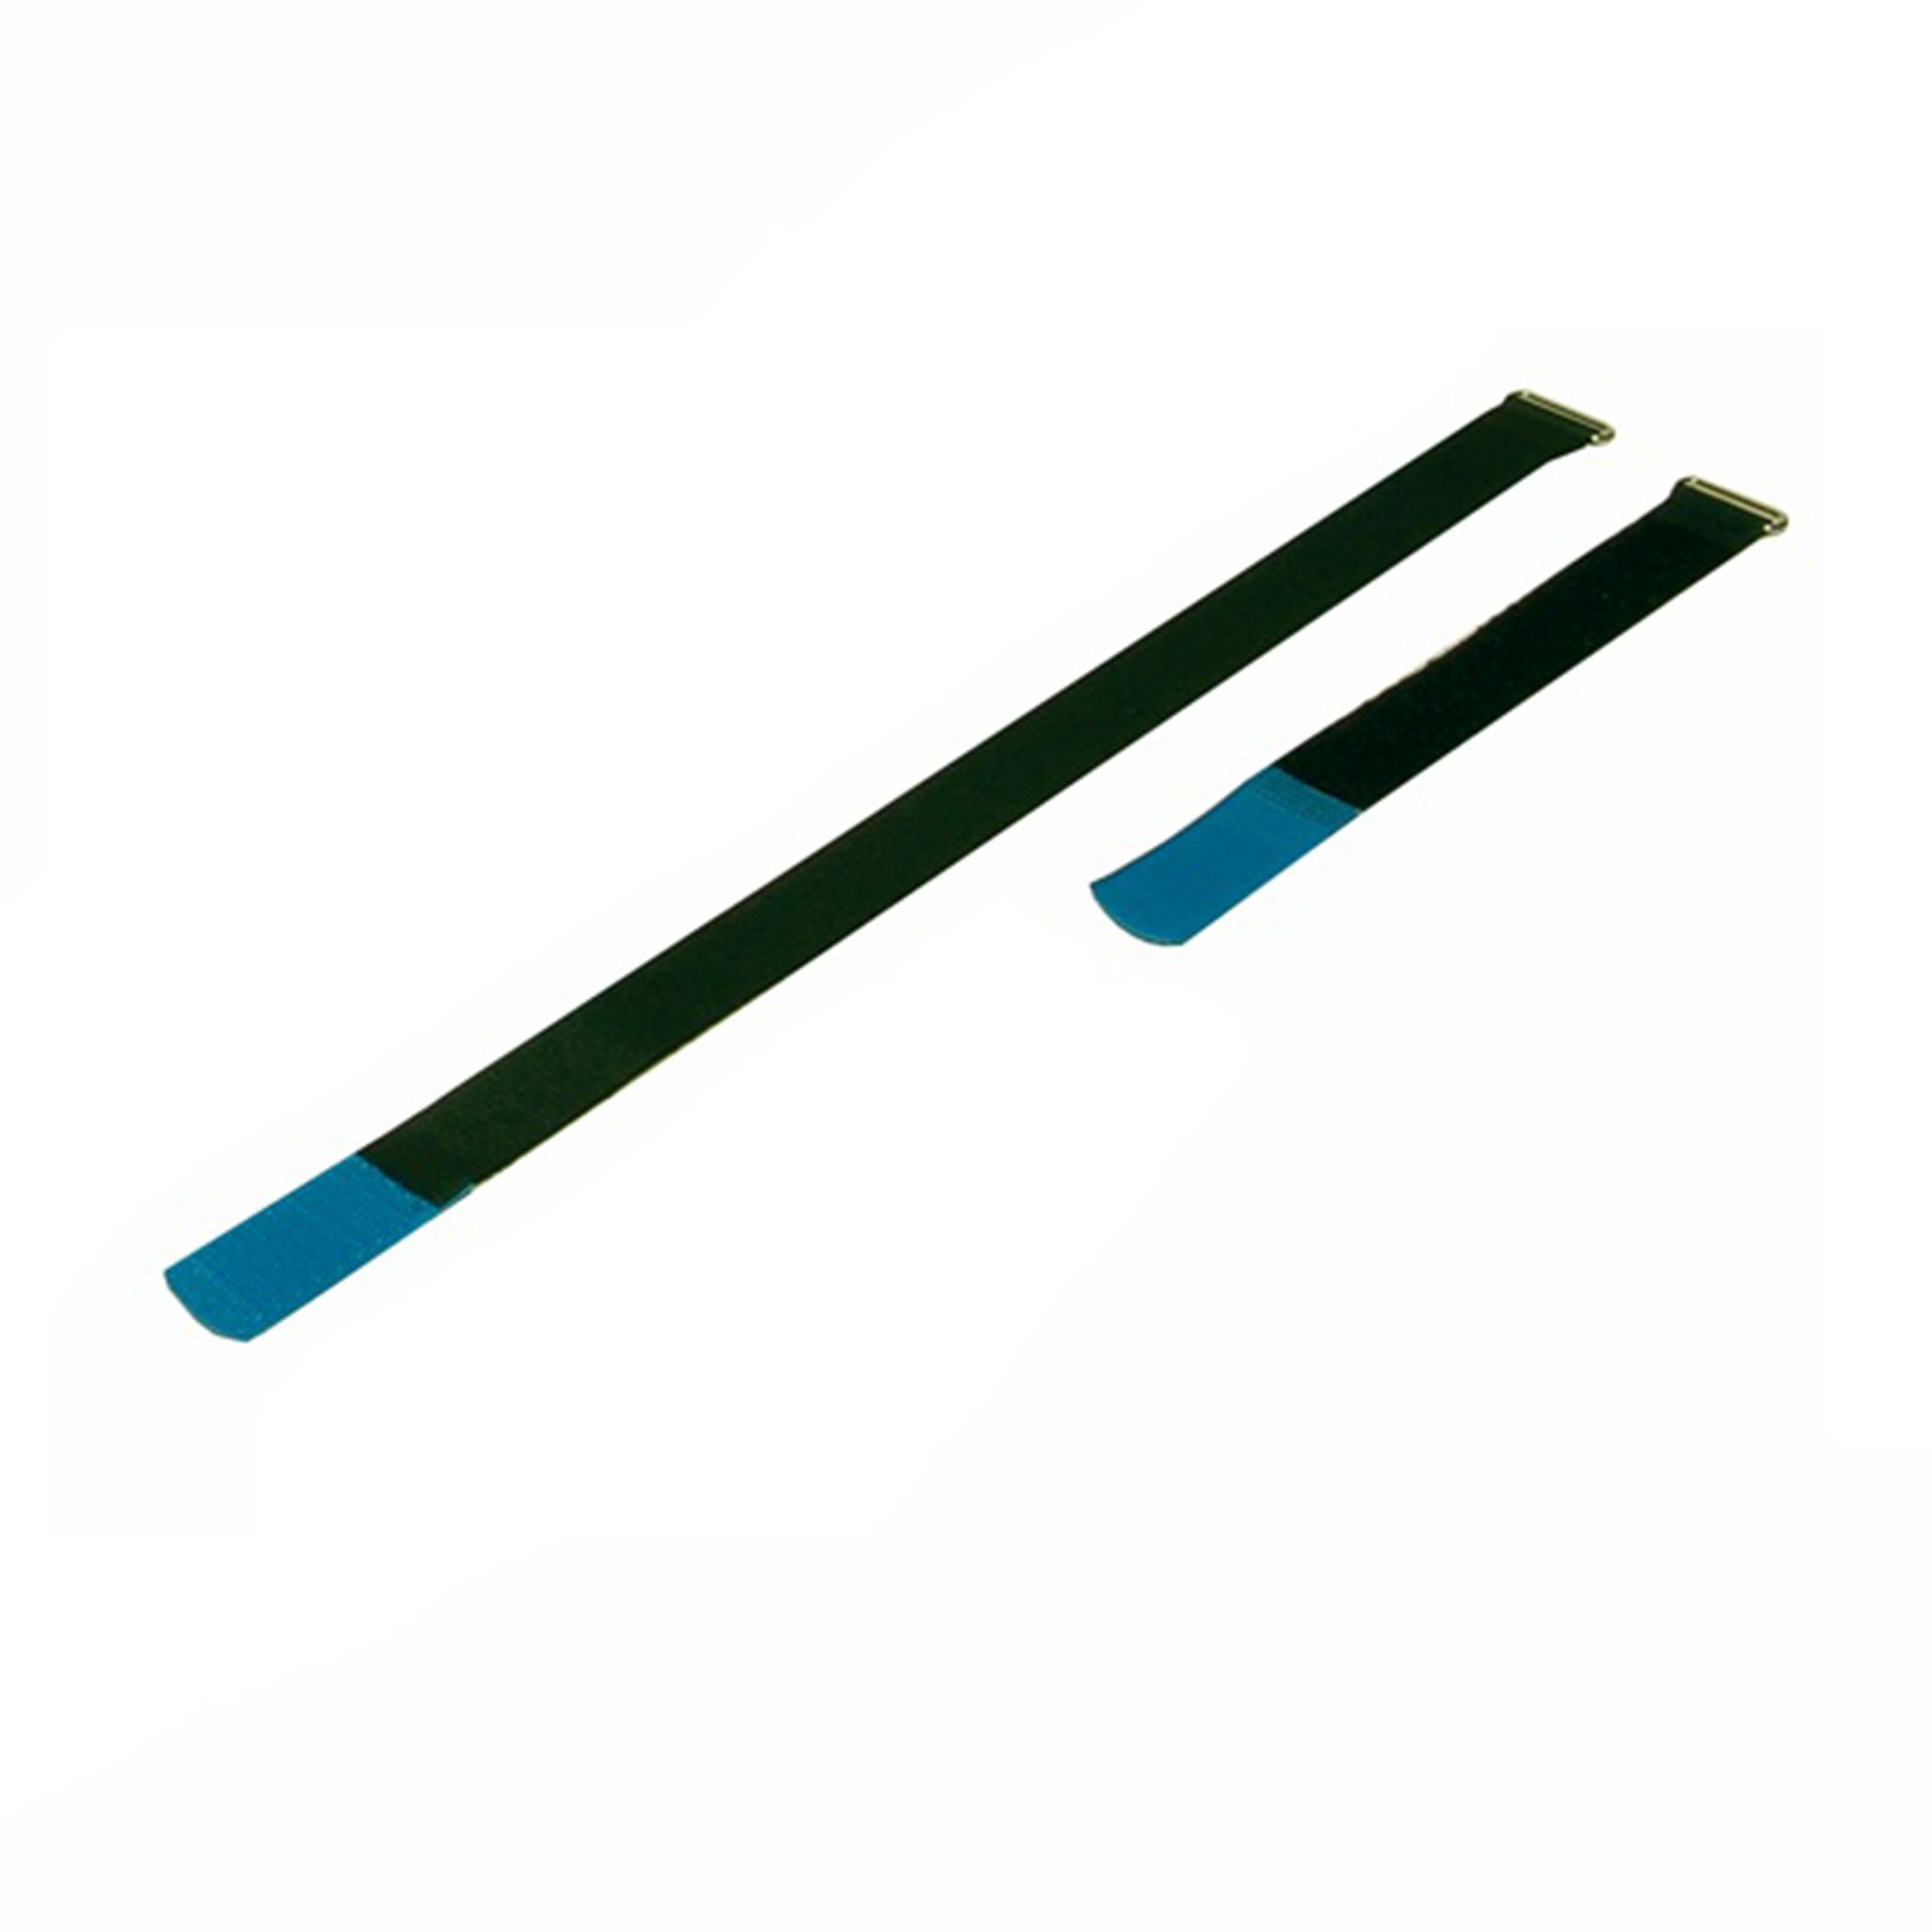 Kabelbinder 300x25mm met haaktip blauw, (10 stuks) - a2530h